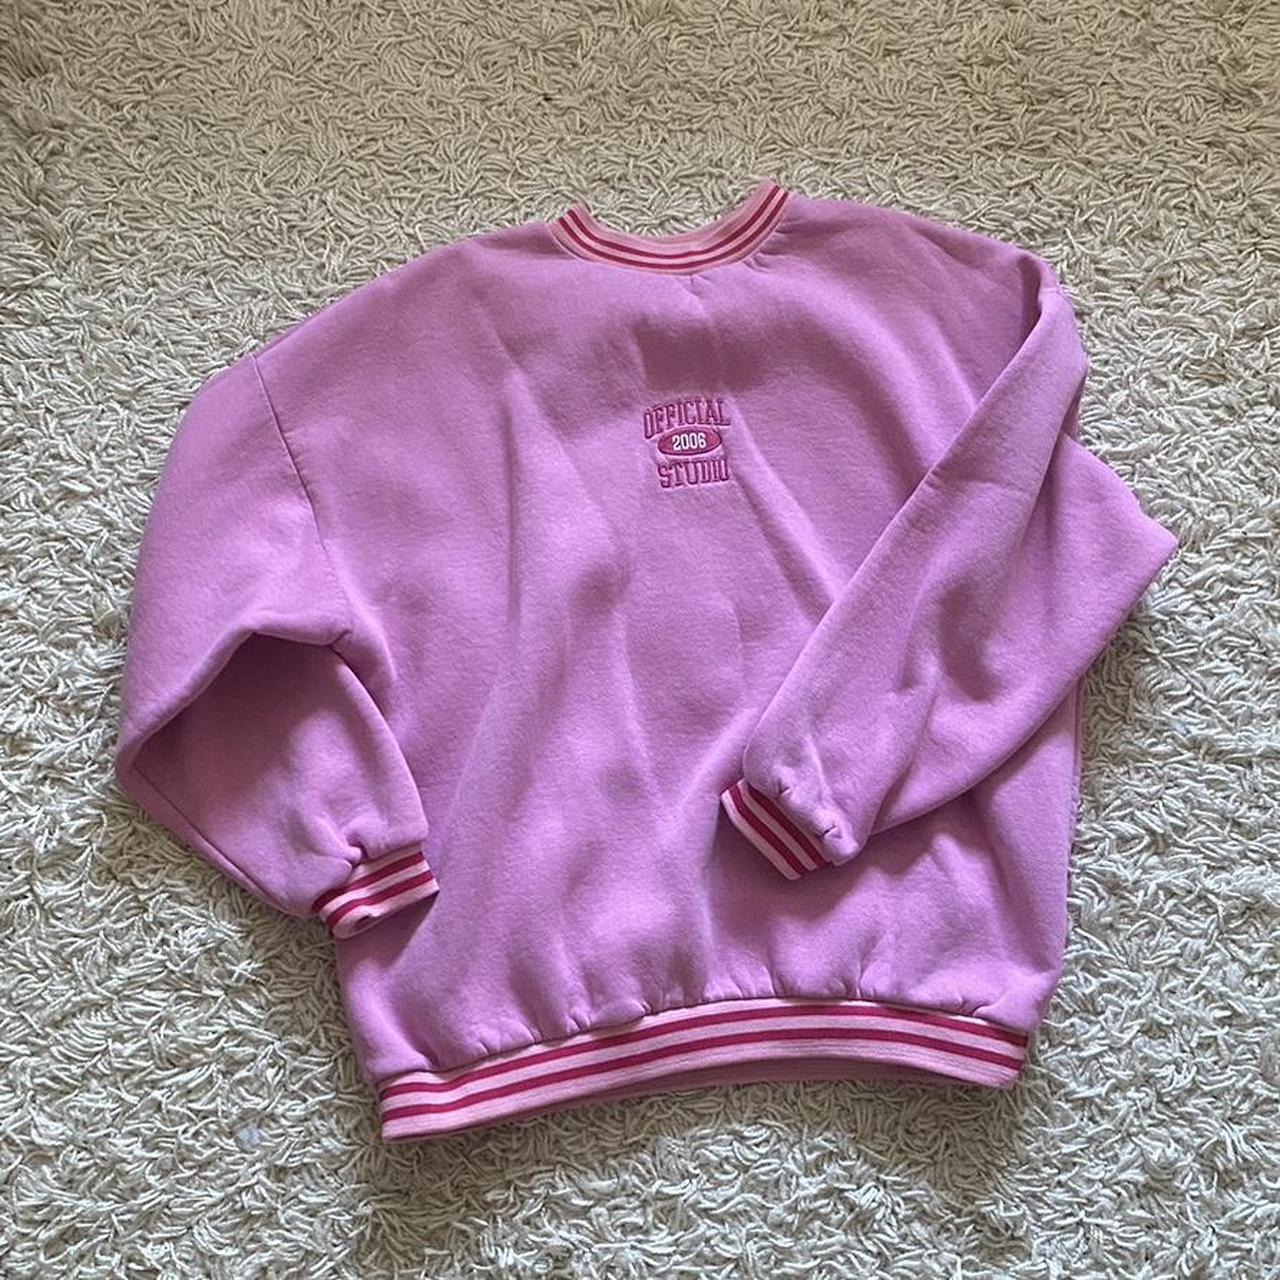 Boohoo Pink Crewneck Sweatshirt Oversized!! Super... - Depop